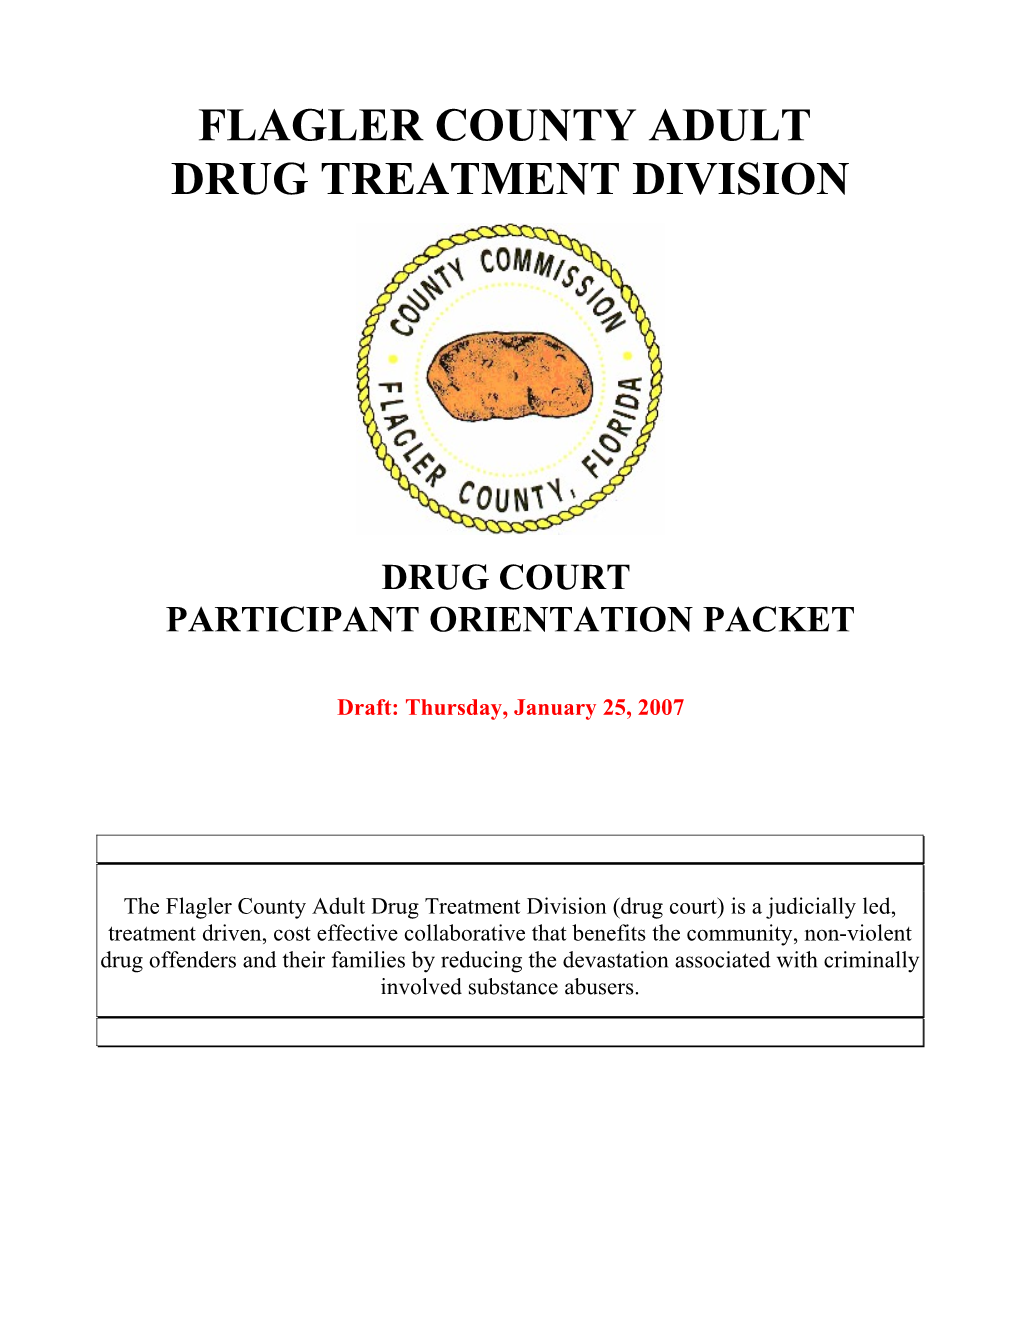 Flagler County Adult Drug Treatment Division